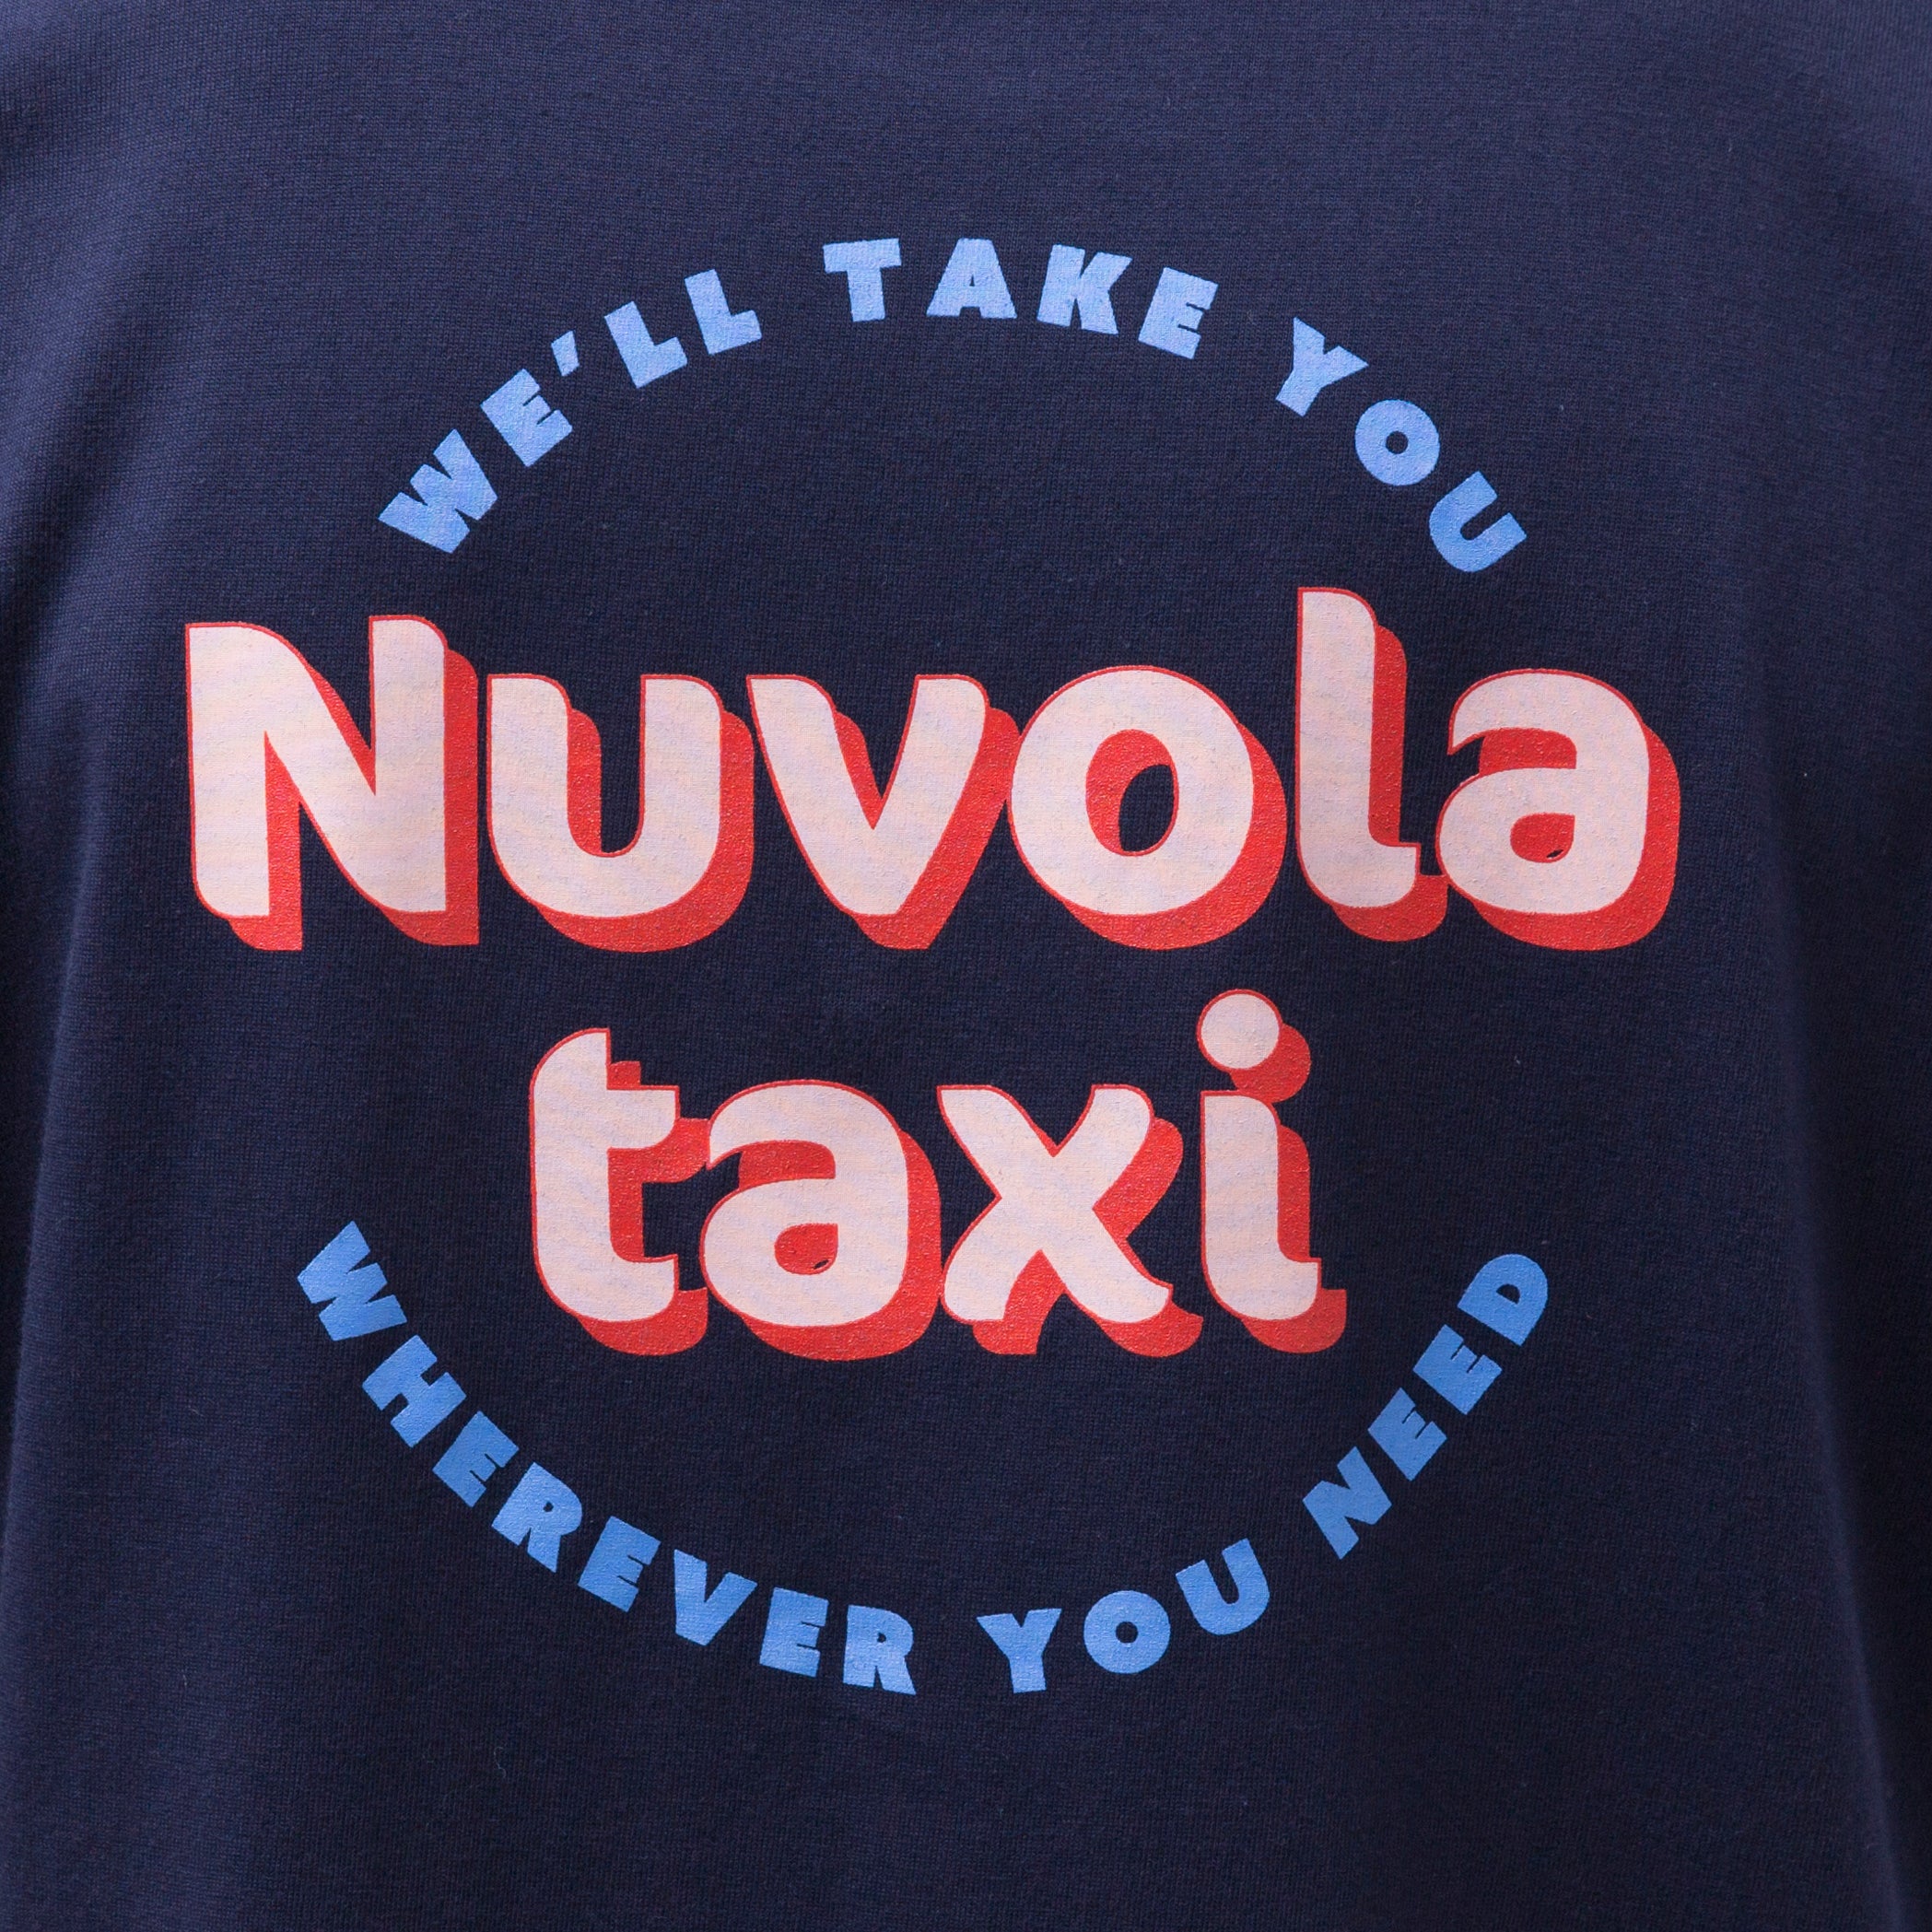 Nuvola taxi Tshirt/NAVY